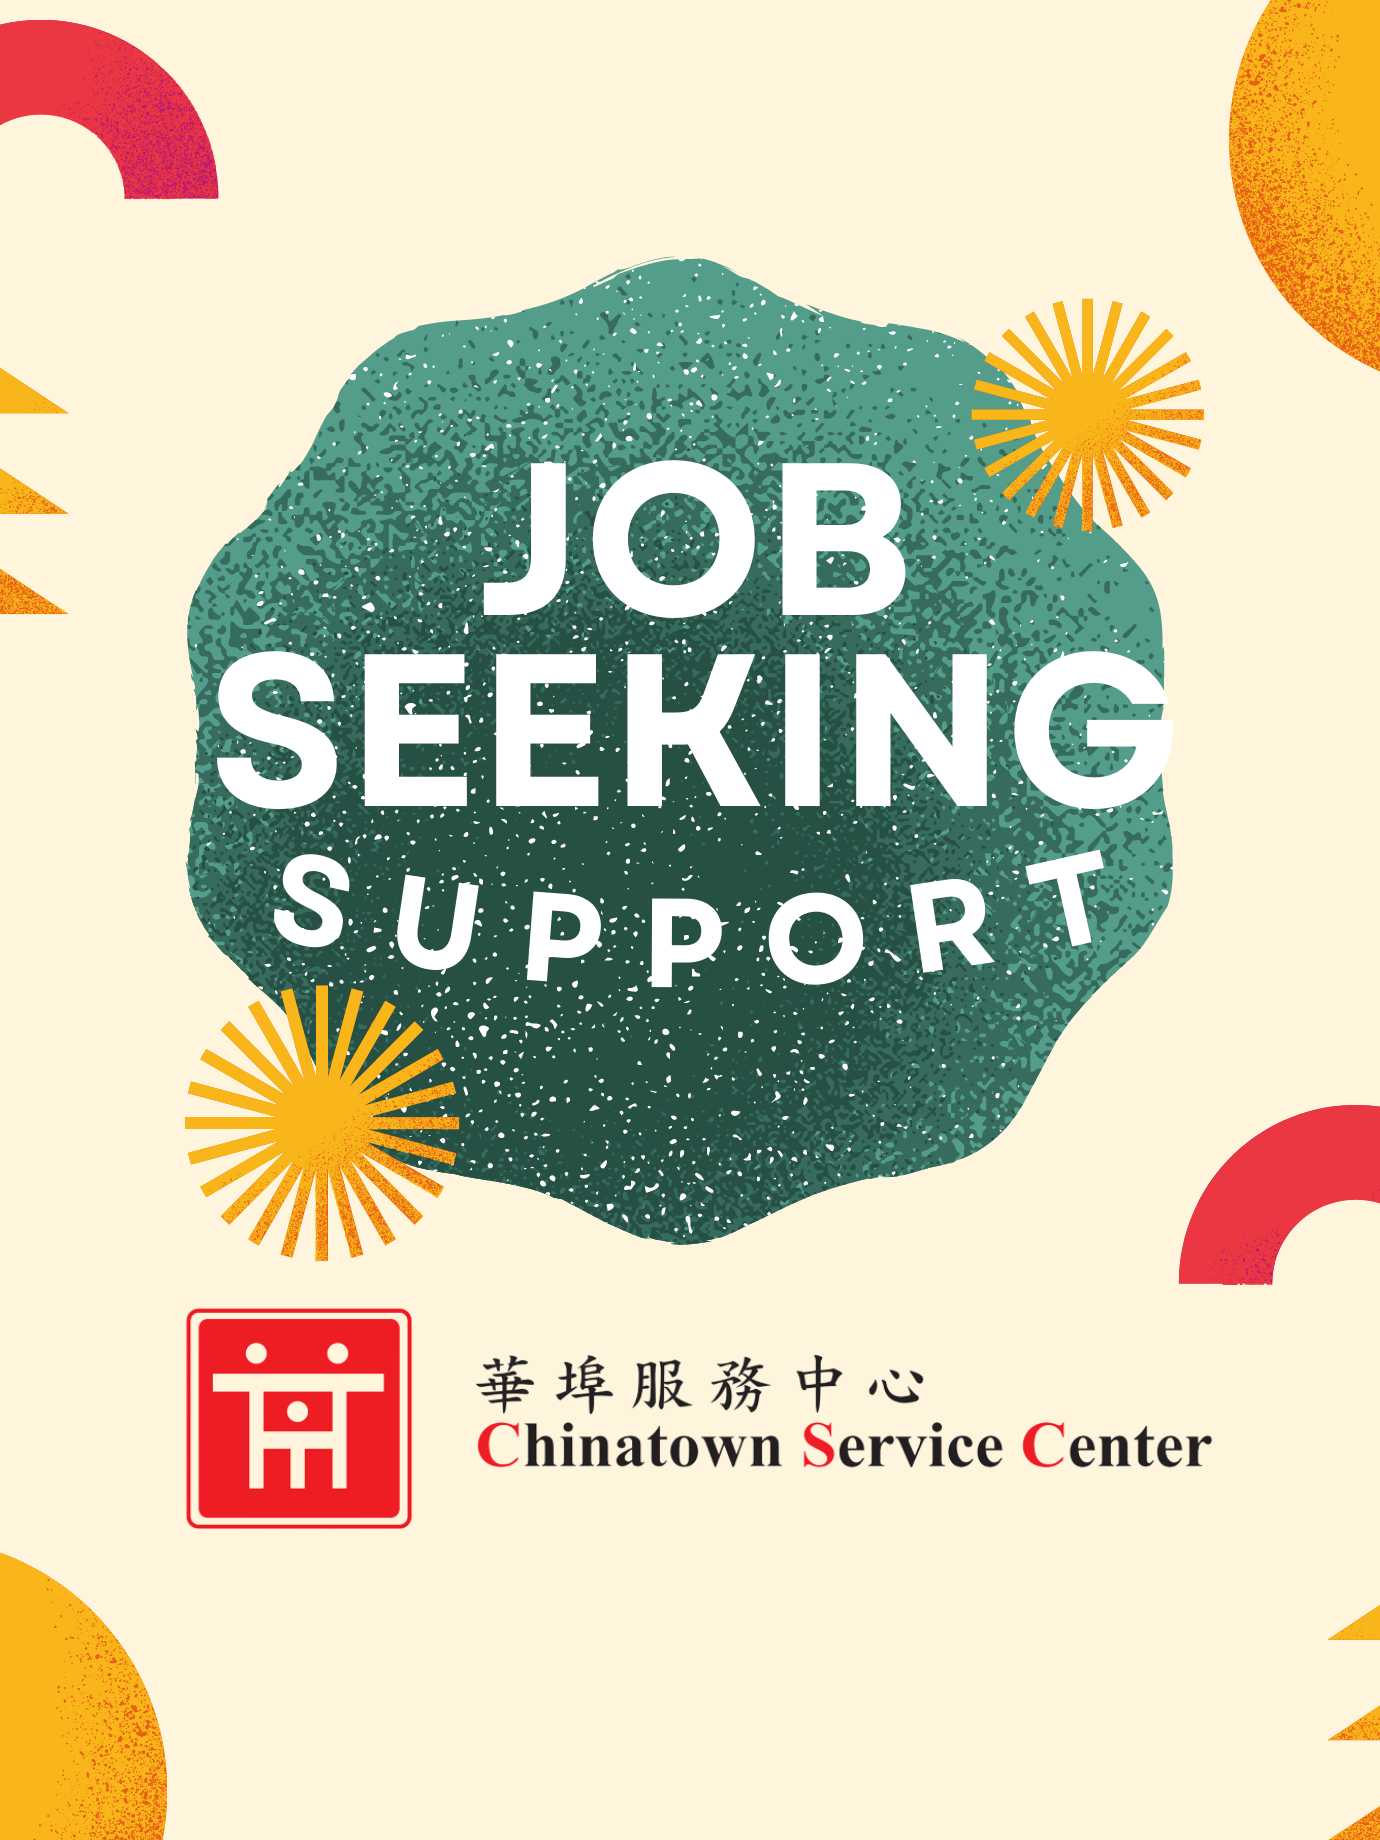 job seeking support